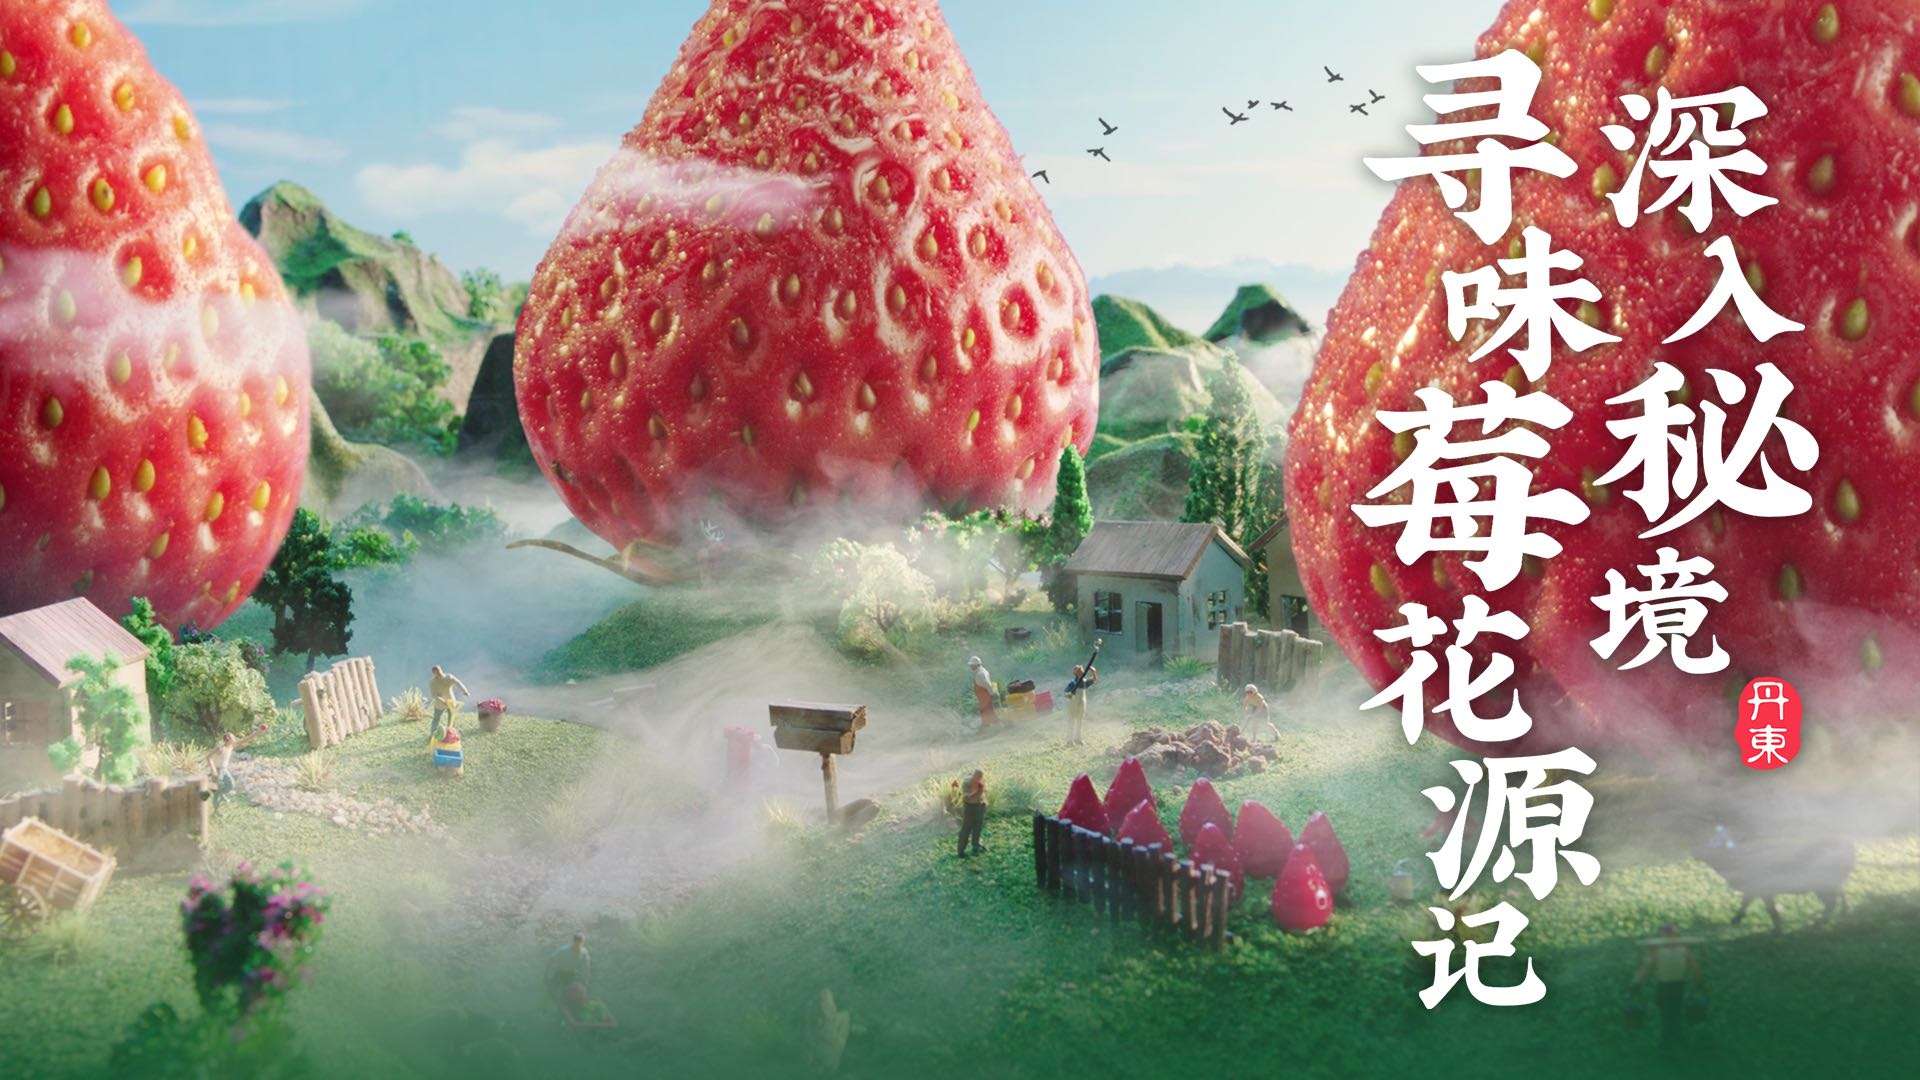 安慕希丹东草莓酸奶-寻味莓花源记